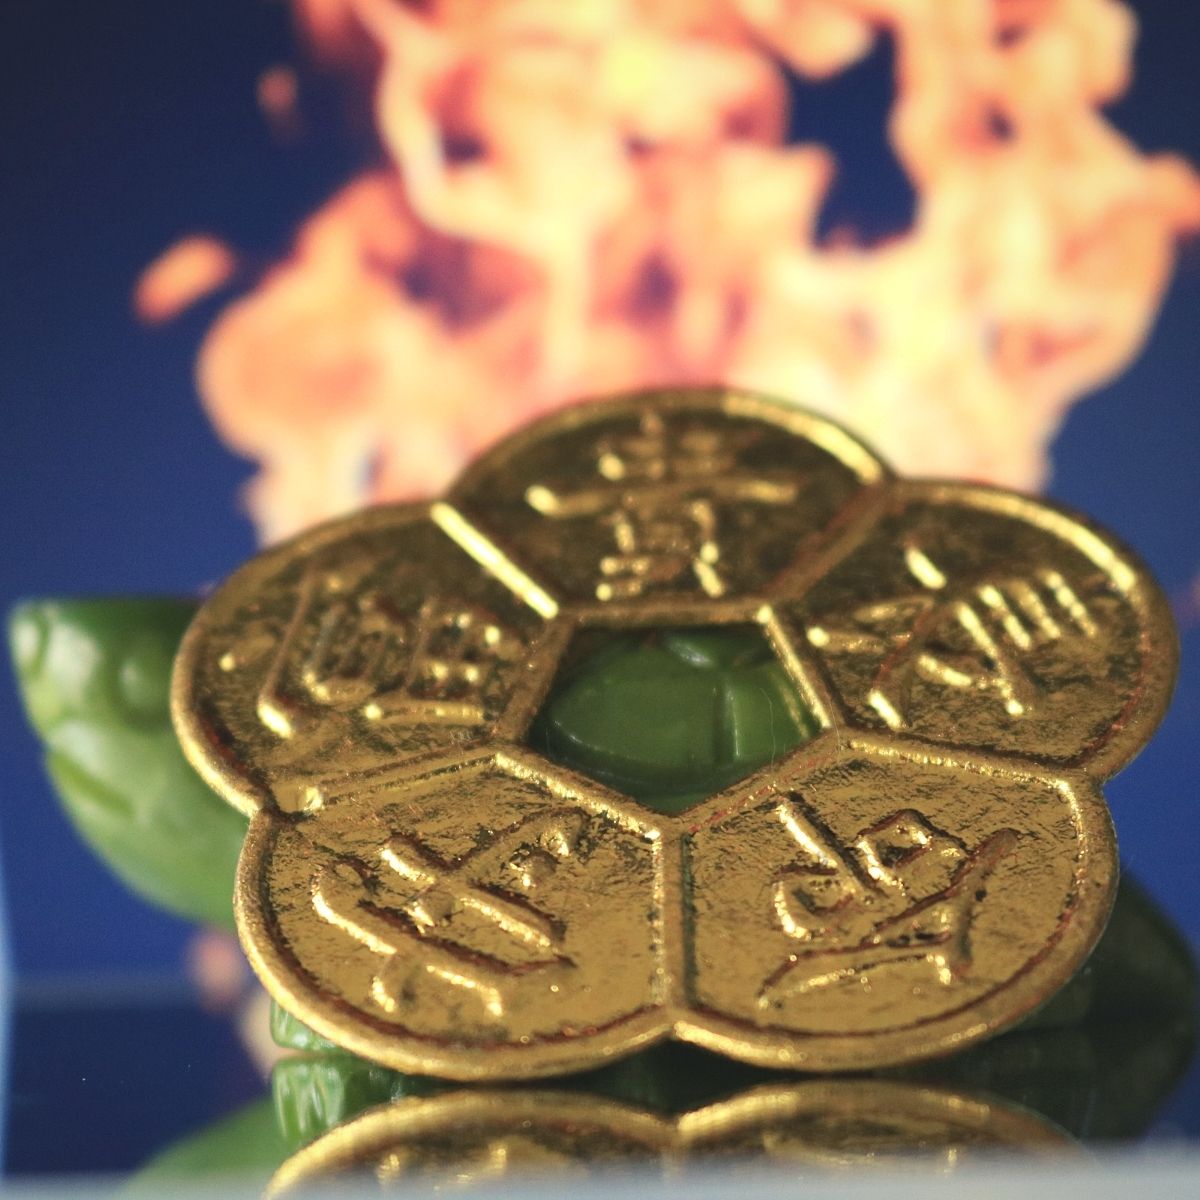 Tiền Xu Hoa Mai 5 Cánh Liền (2 Mặt) mạ vàng